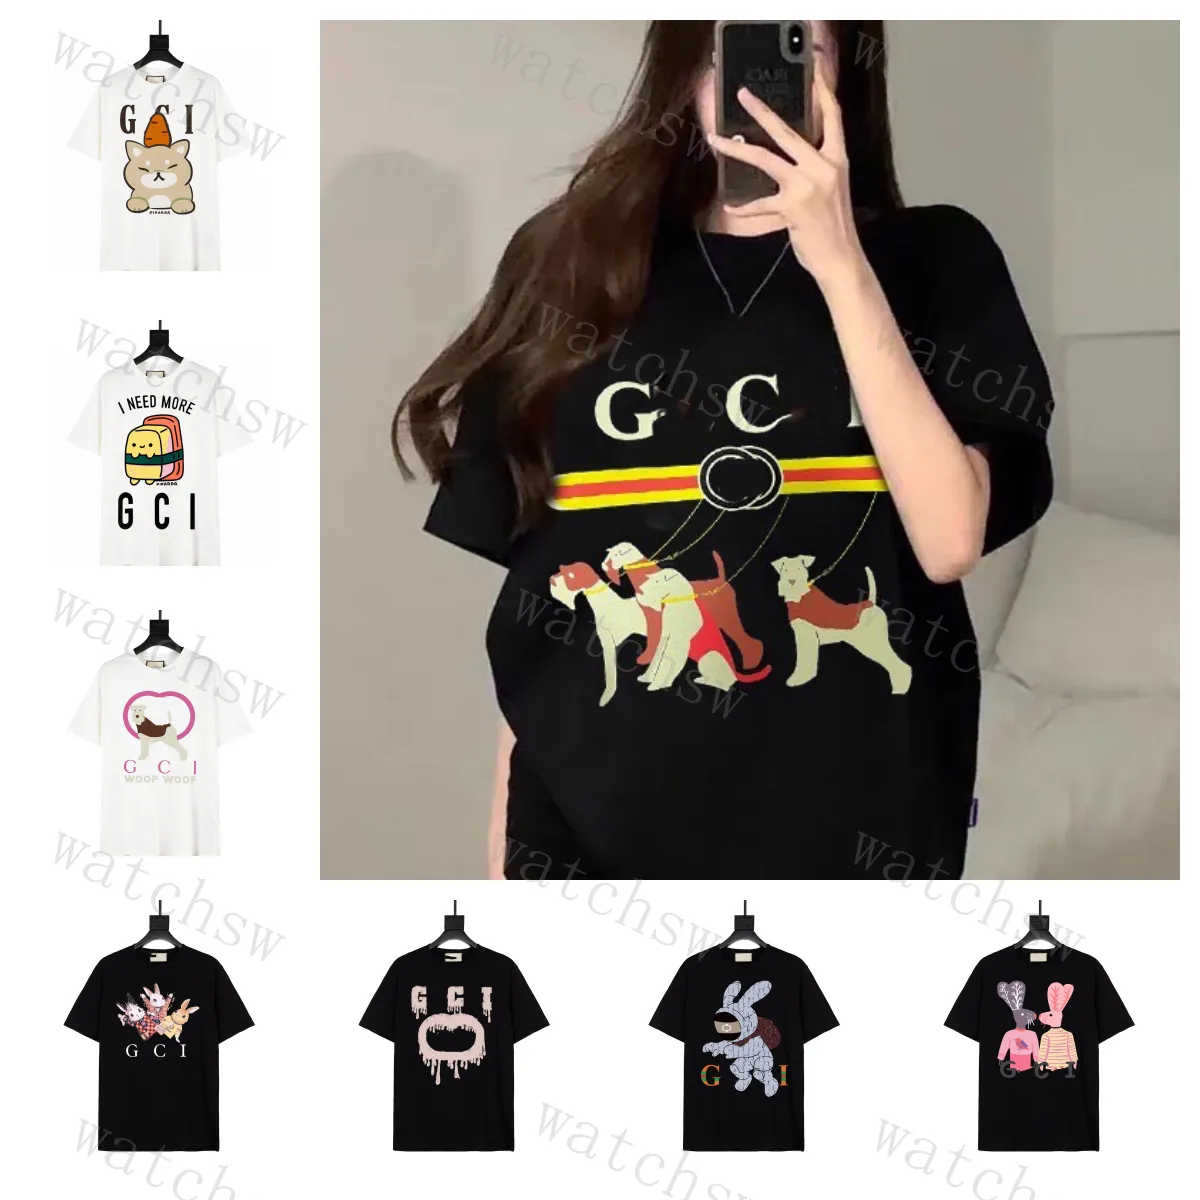 В коллекции футболок с круглым вырезом Alphabet Print Kawaii представлены яркие футболки в стиле аниме и животных для мужчин и женщин с принтами или вышивкой.